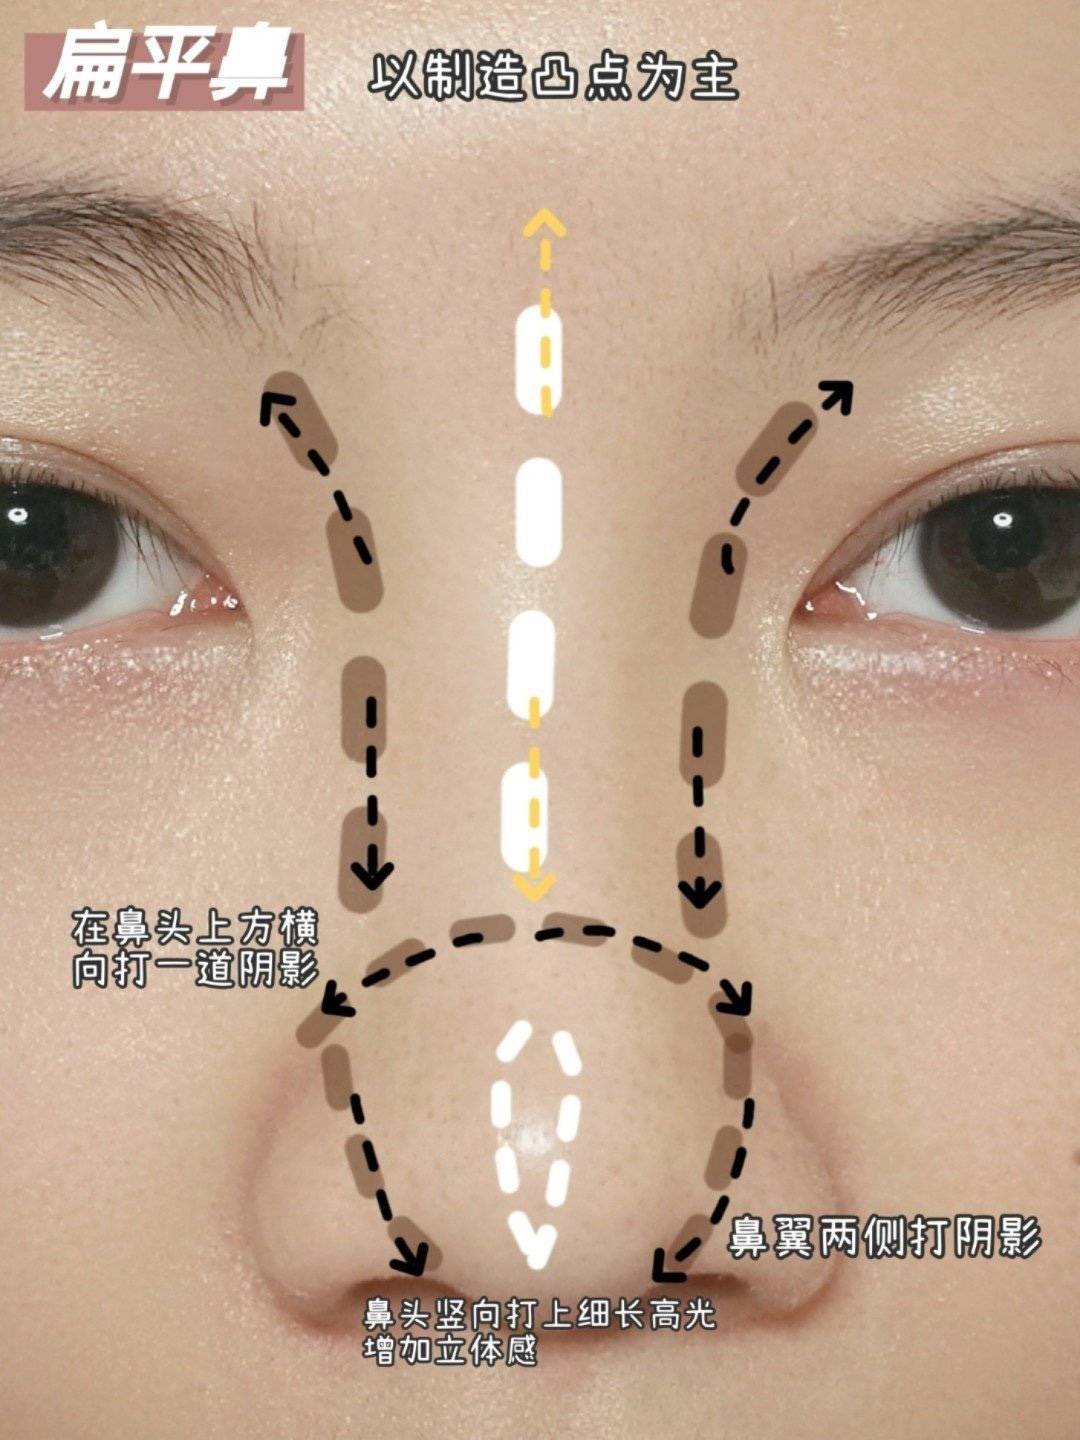 隆鼻重修二次隆鼻-精緻秀氣鼻型案例分享-韋志曄醫師